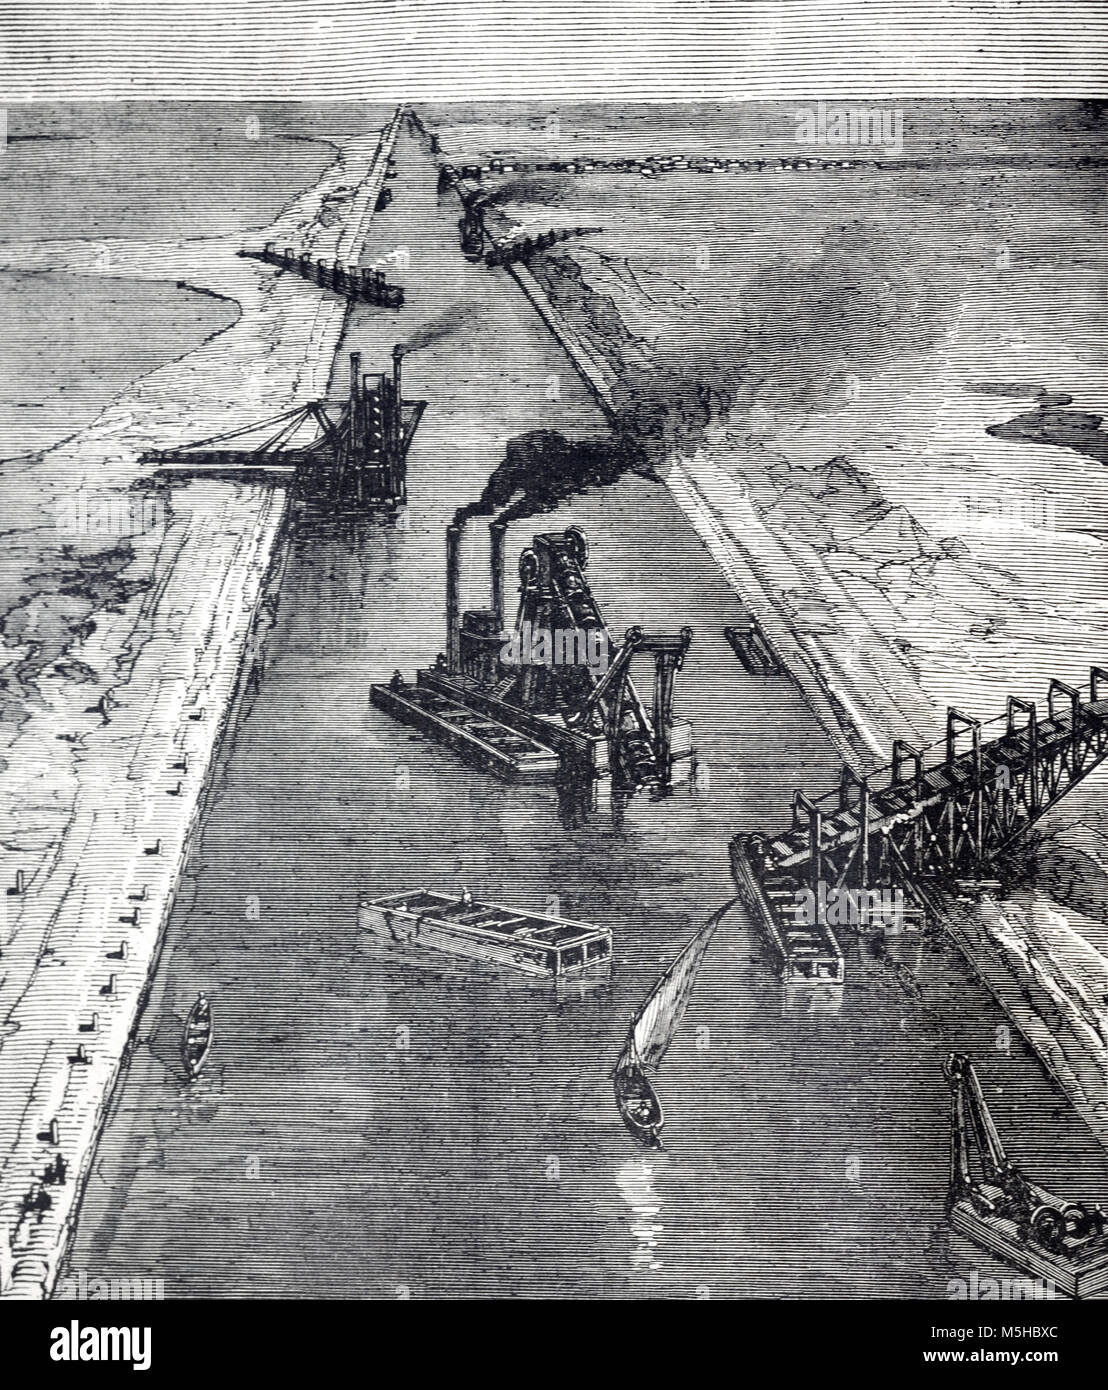 La construction et le dragage du canal de Suez, Egypte (gravure, 1889) Banque D'Images